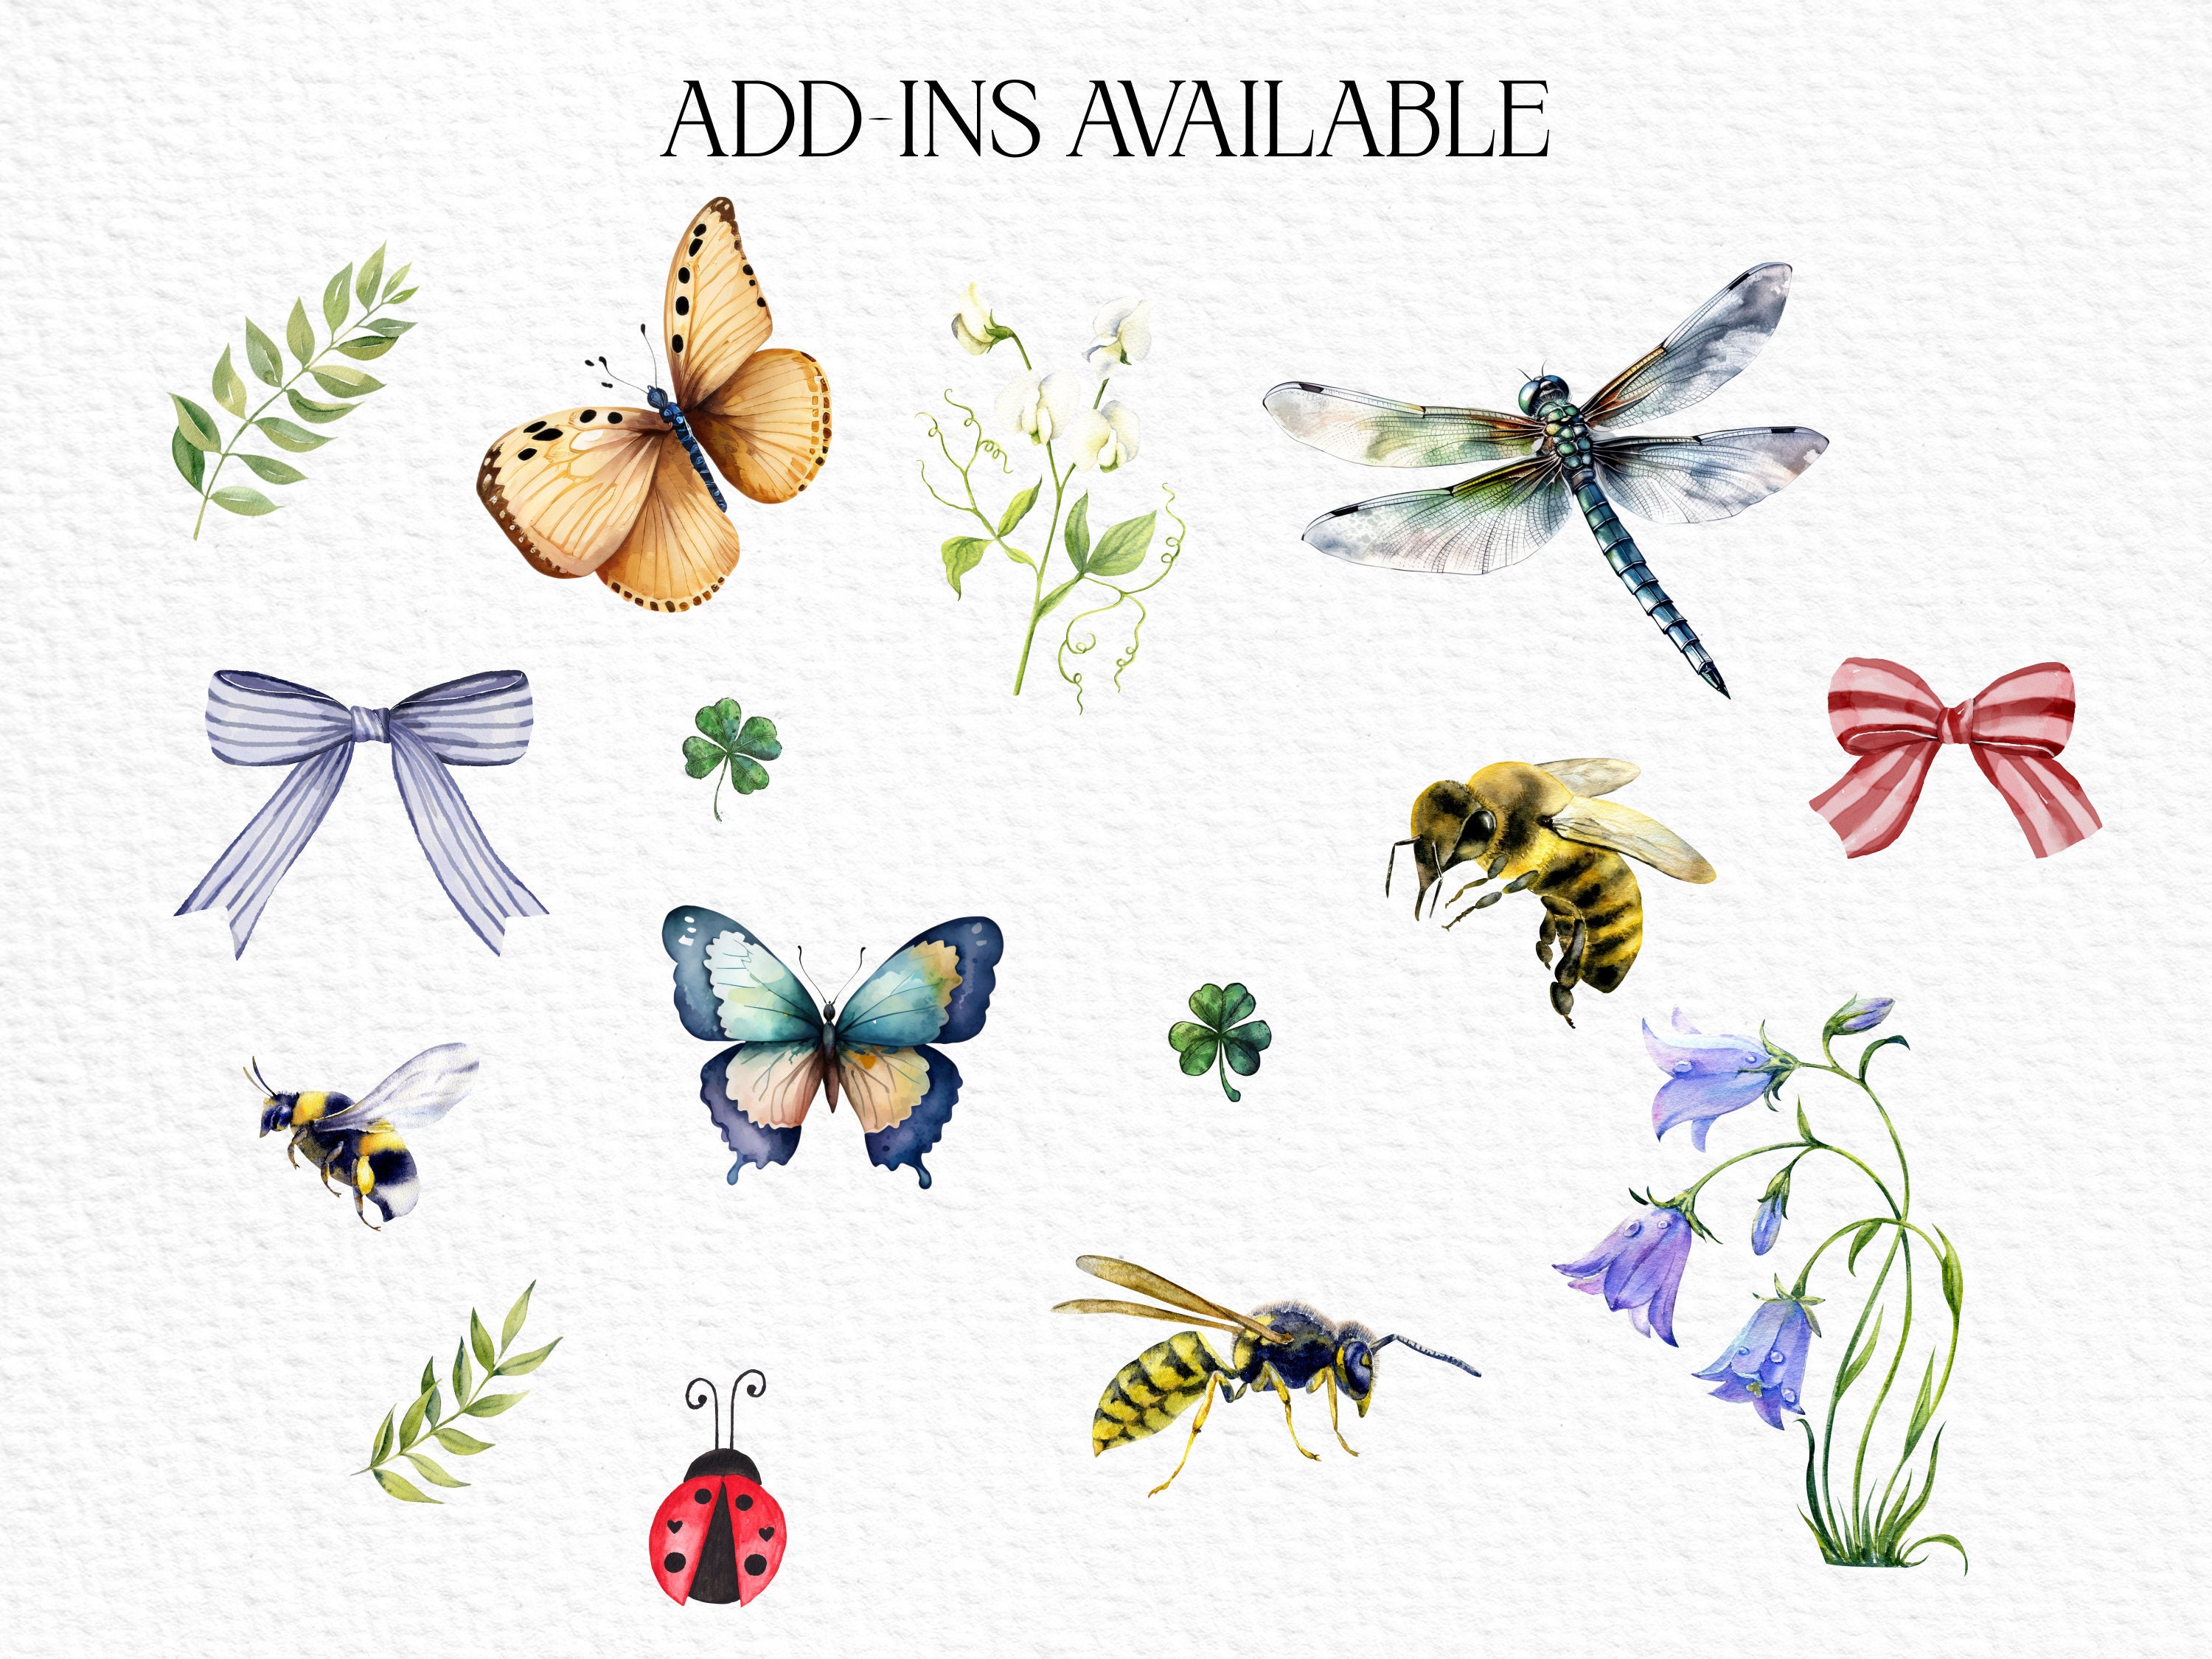 Butterfly Flower Bouquet Art Board Print for Sale by HappyLifeCreate